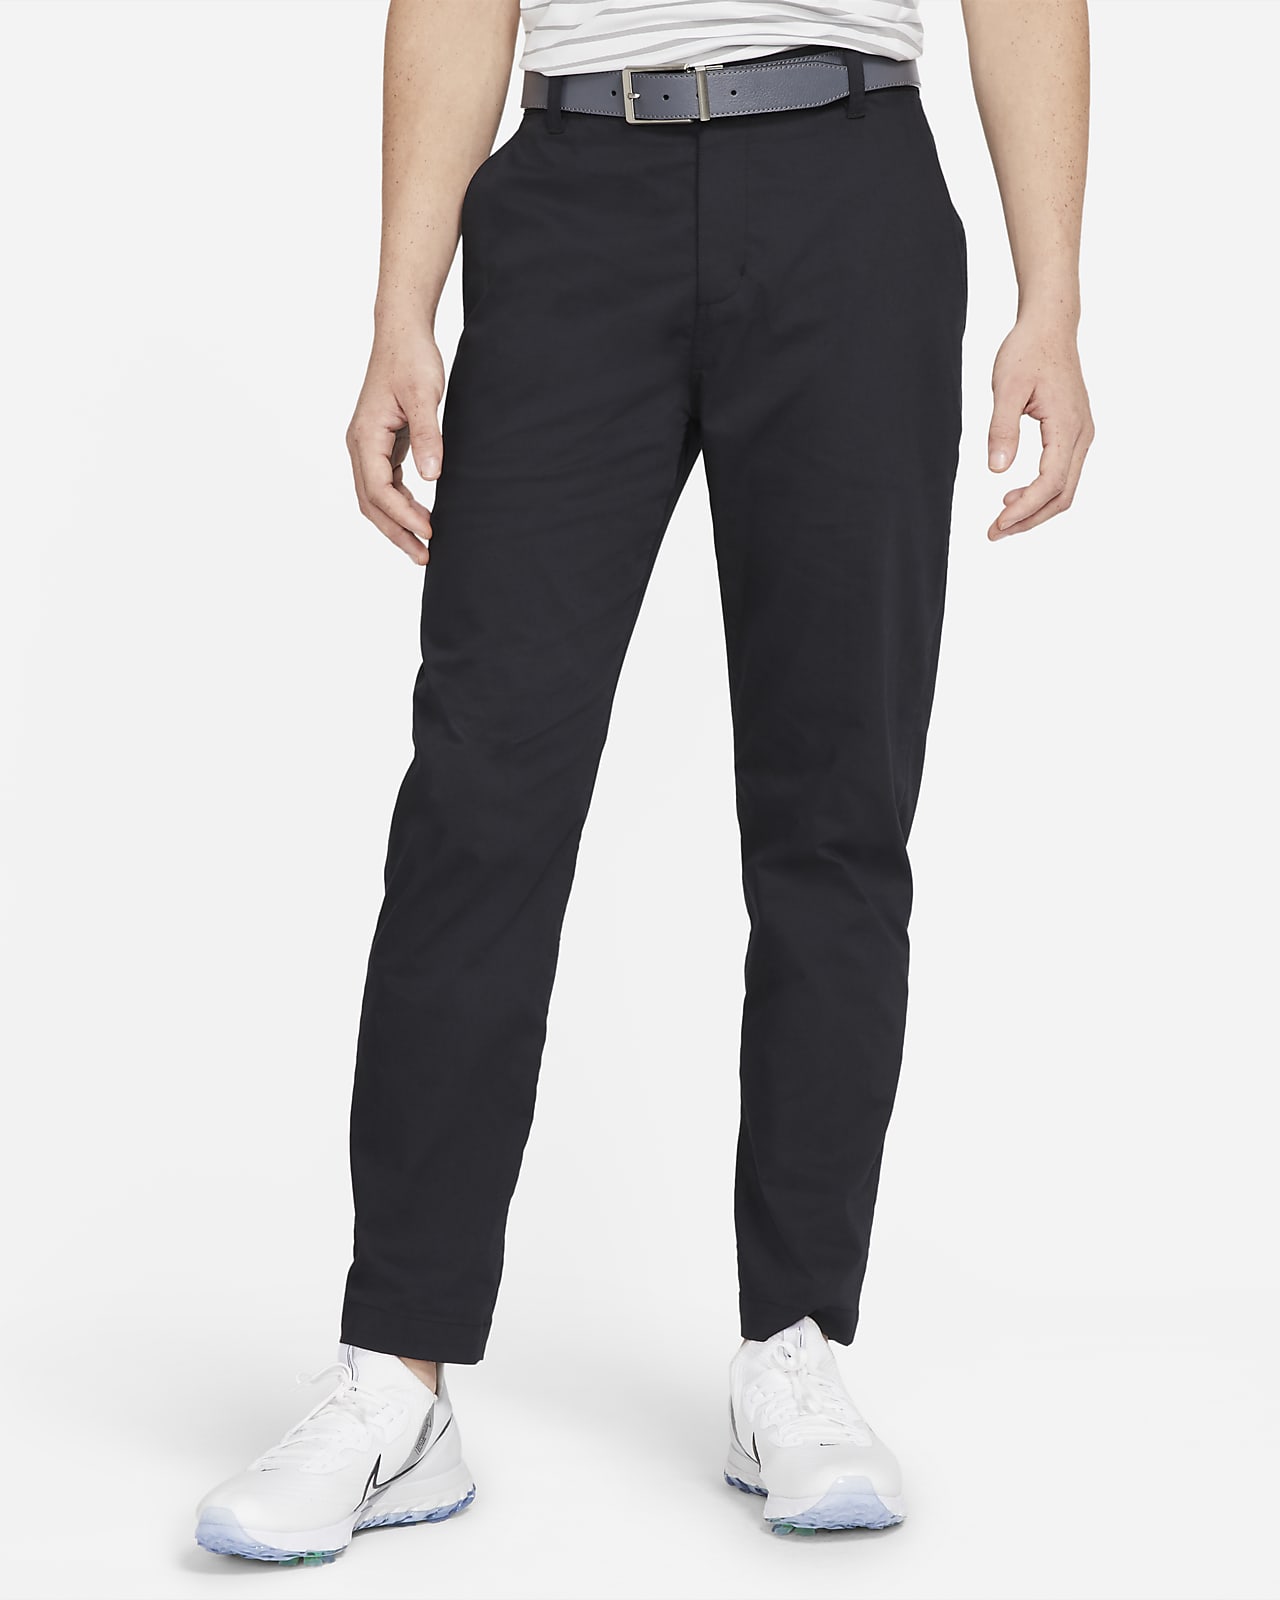 Nike Dri-FIT UV Pantalons Chino amb ajust estàndard de golf - Home